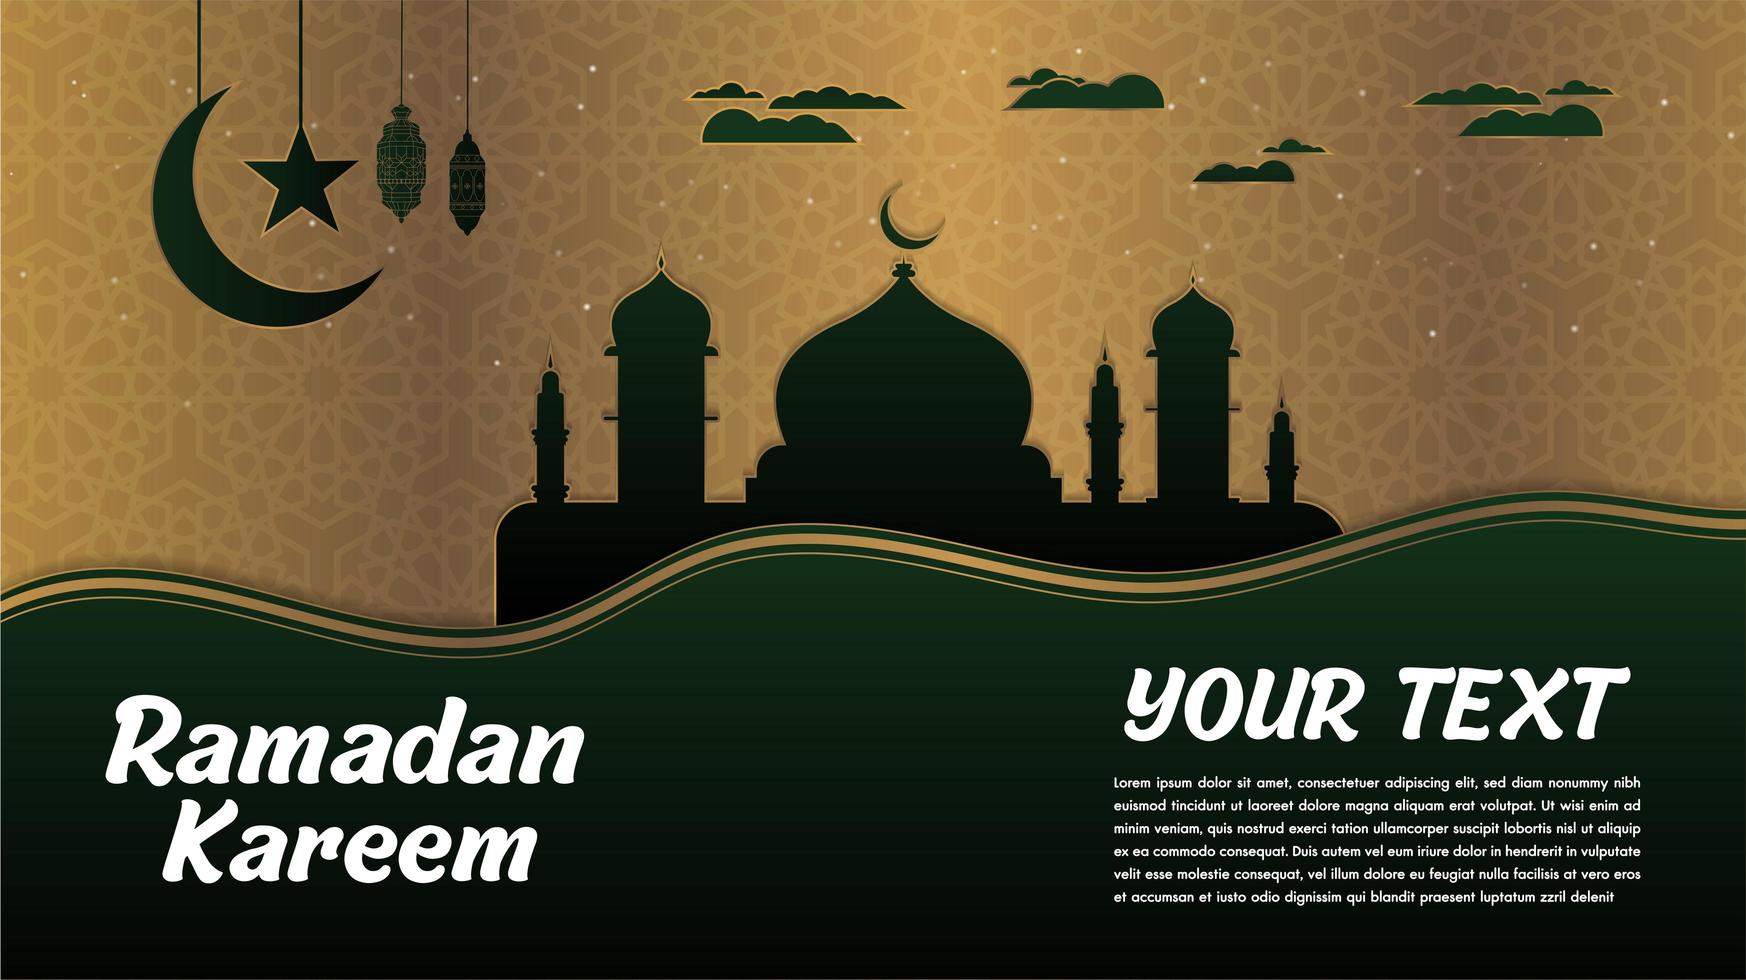 Mesquita de ramadan kareem preto silhueta com verde vetor